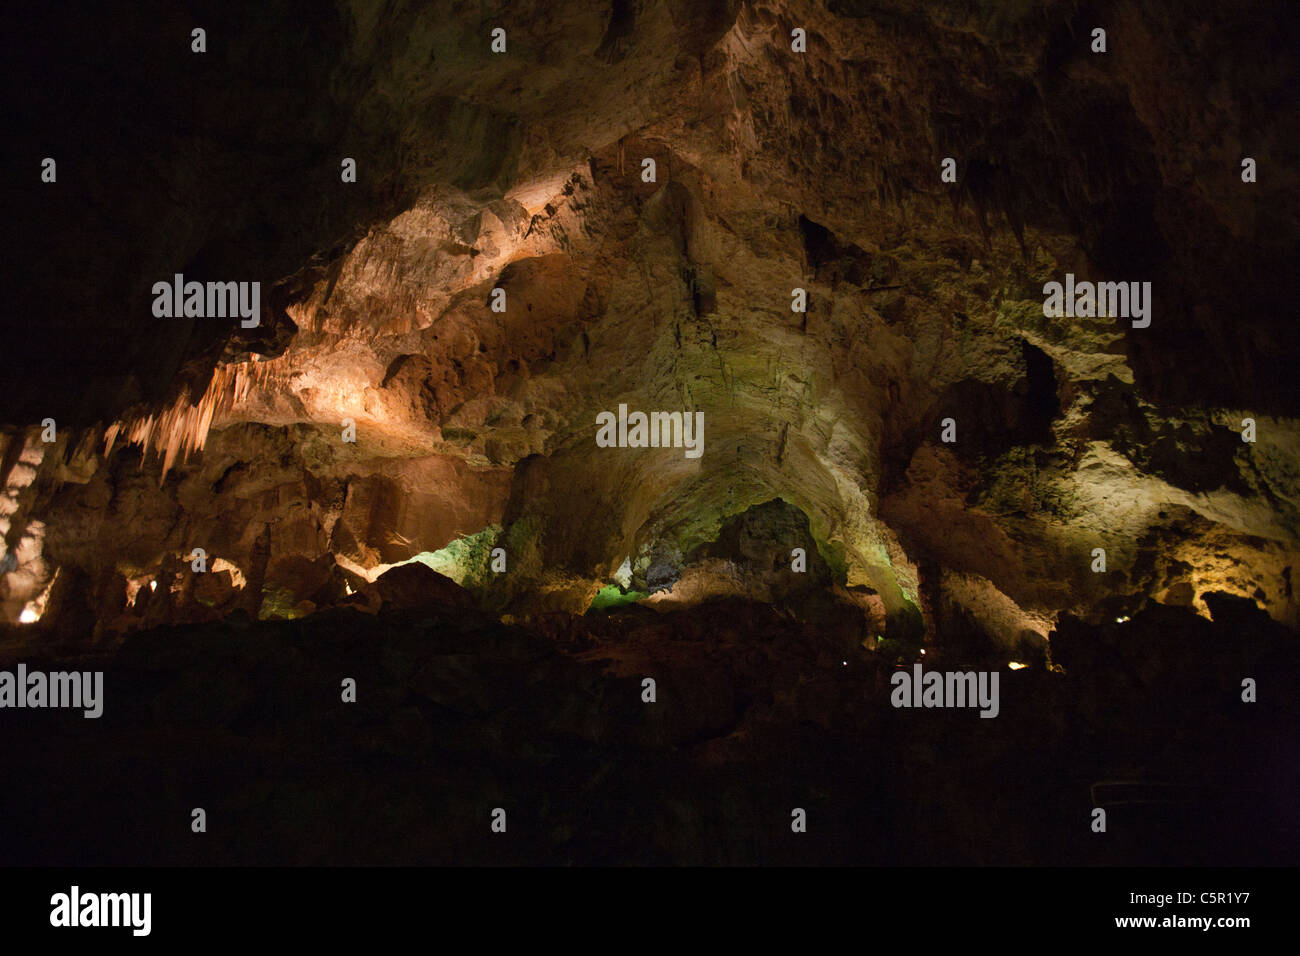 Grotte de l'intérieur, grande chambre formations / Salle de géants, Carlsbad Caverns National Park, New Mexico, United States of America Banque D'Images